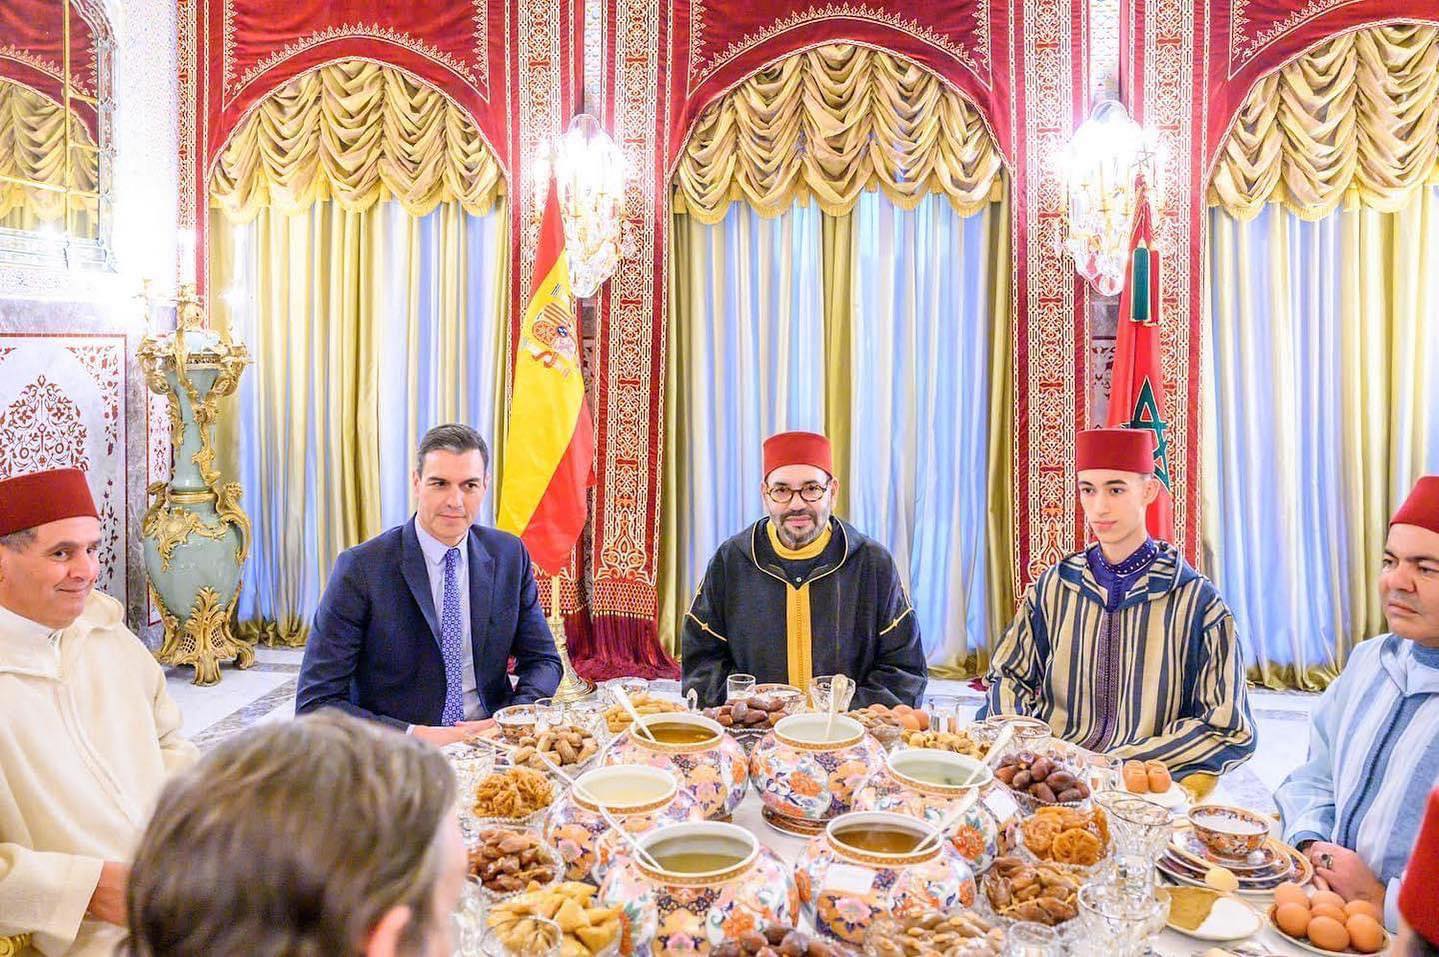 الملك يقيم مأدبة إفطار على شرف رئيس الحكومة الاسبانية بيدرو سانشيز